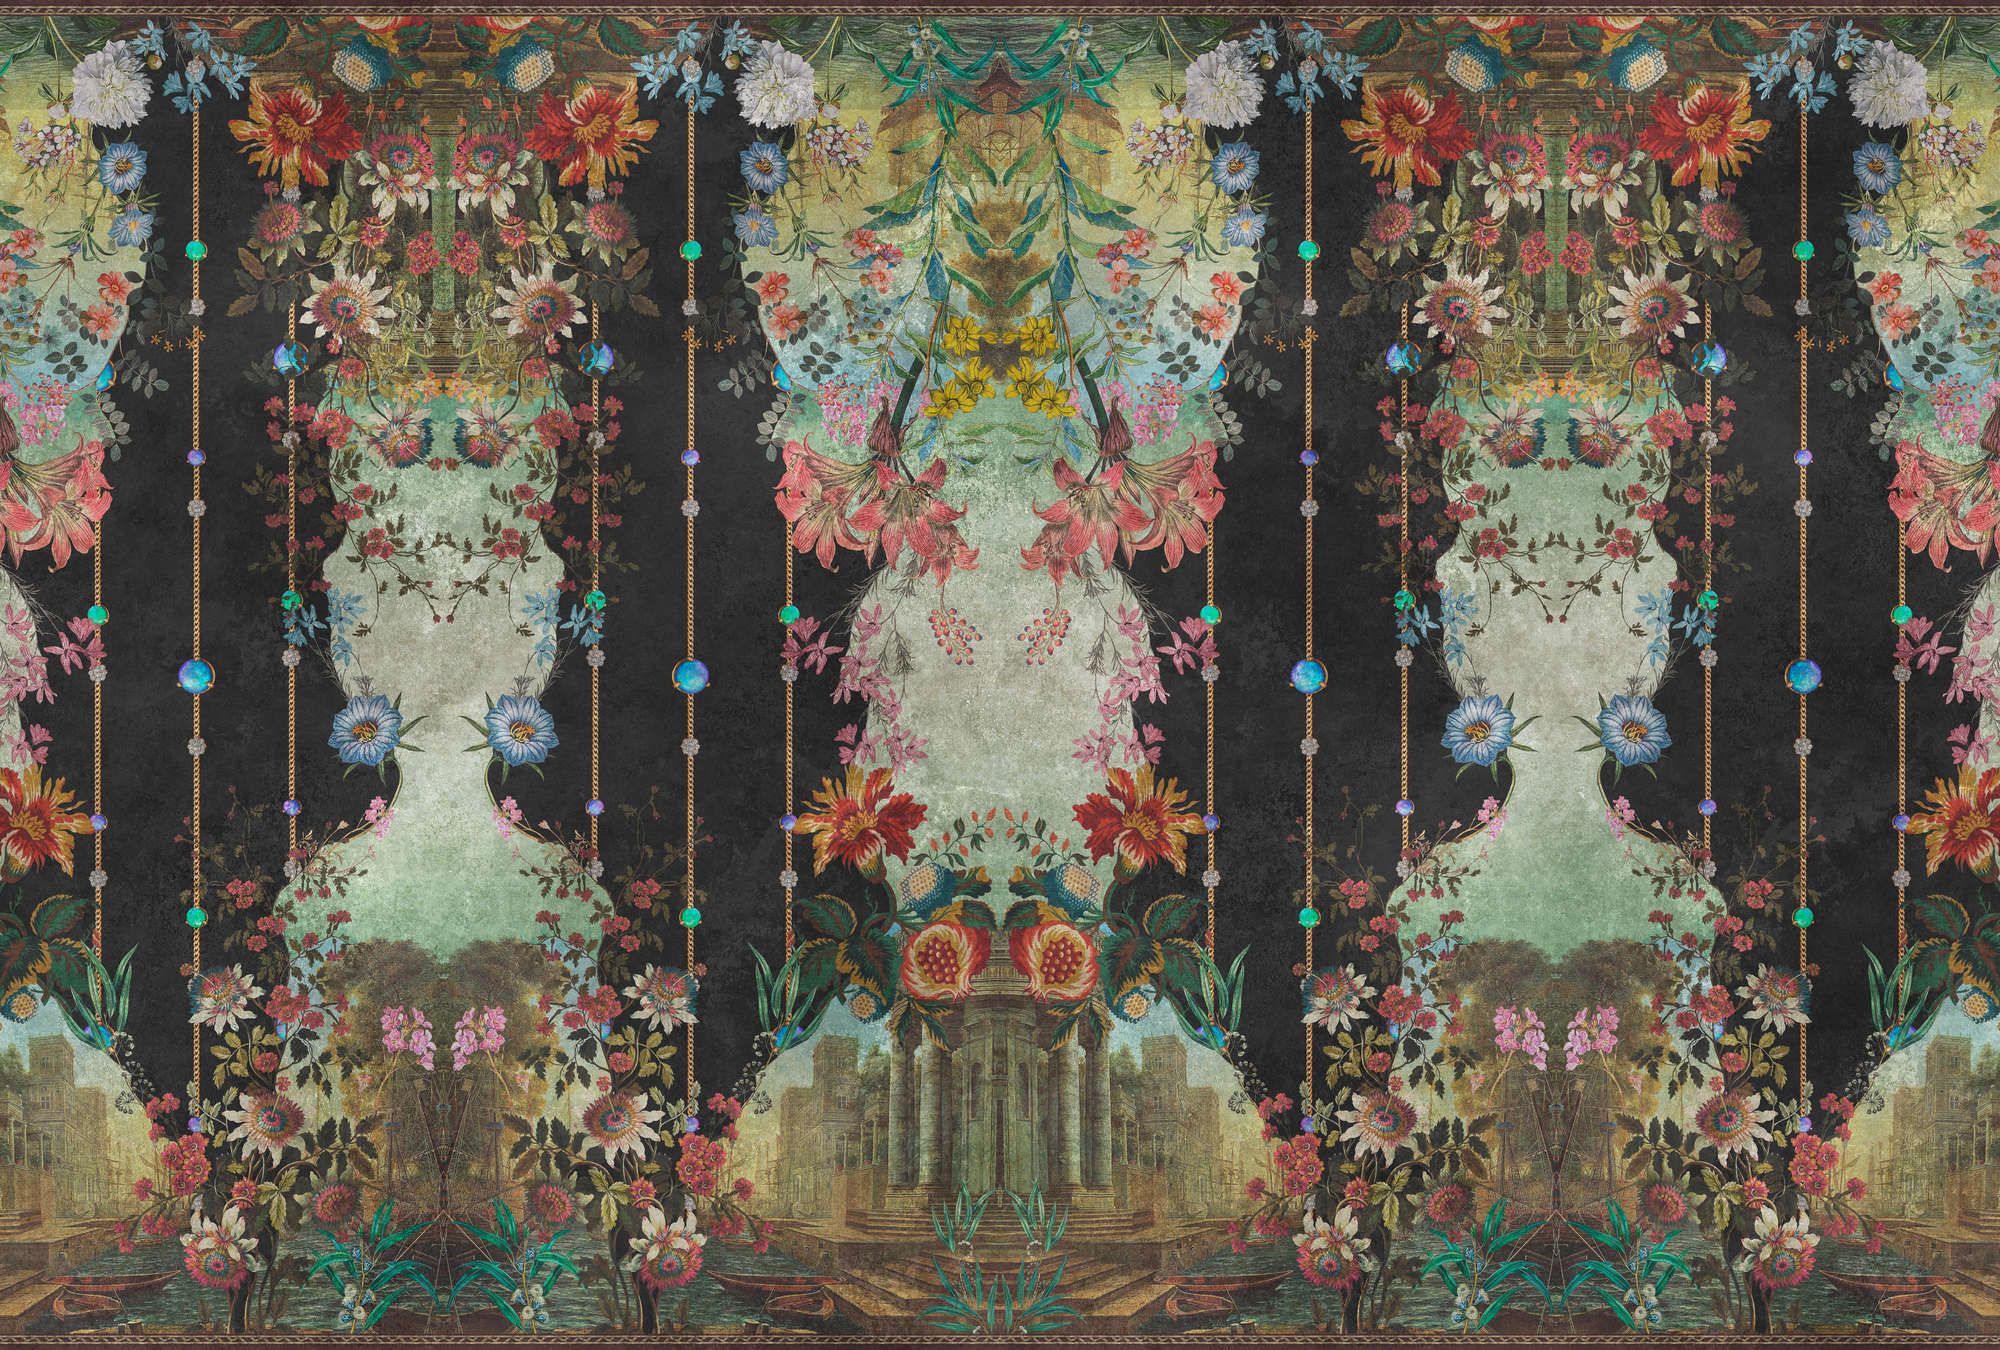             Papel pintado »ophelia« - Revestimiento ornamental con motivo floral sobre textura de escayola vintage - Material no tejido de textura ligera.
        